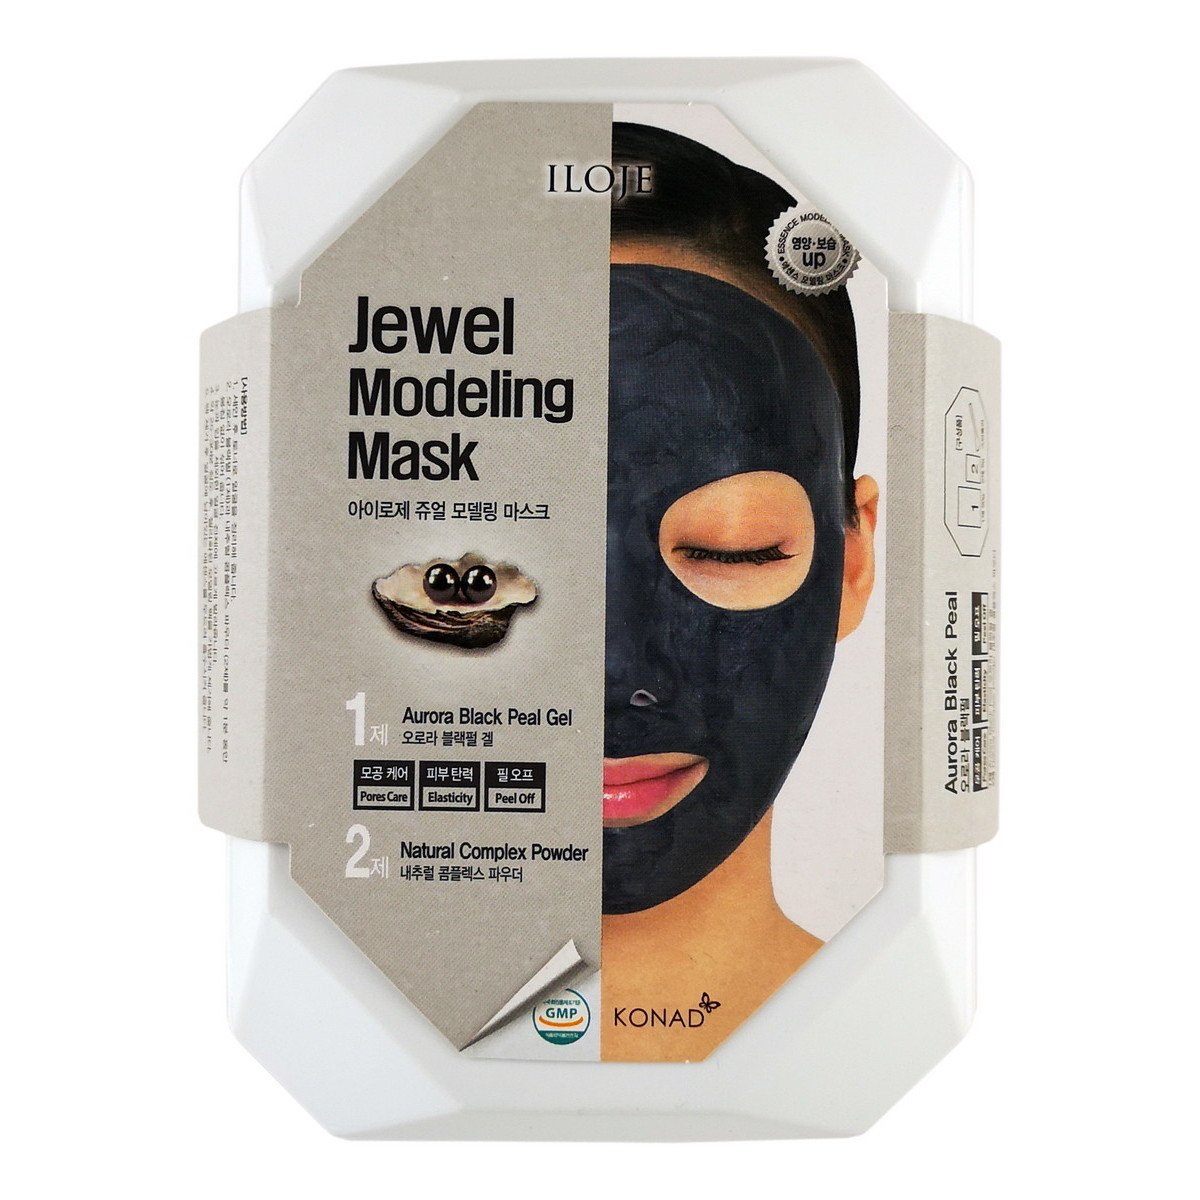 фото Маска косметическая Konad / Моделирующая маска для лица с черным жемчугом, арт. 726080, 50 g*1, 5 g*1